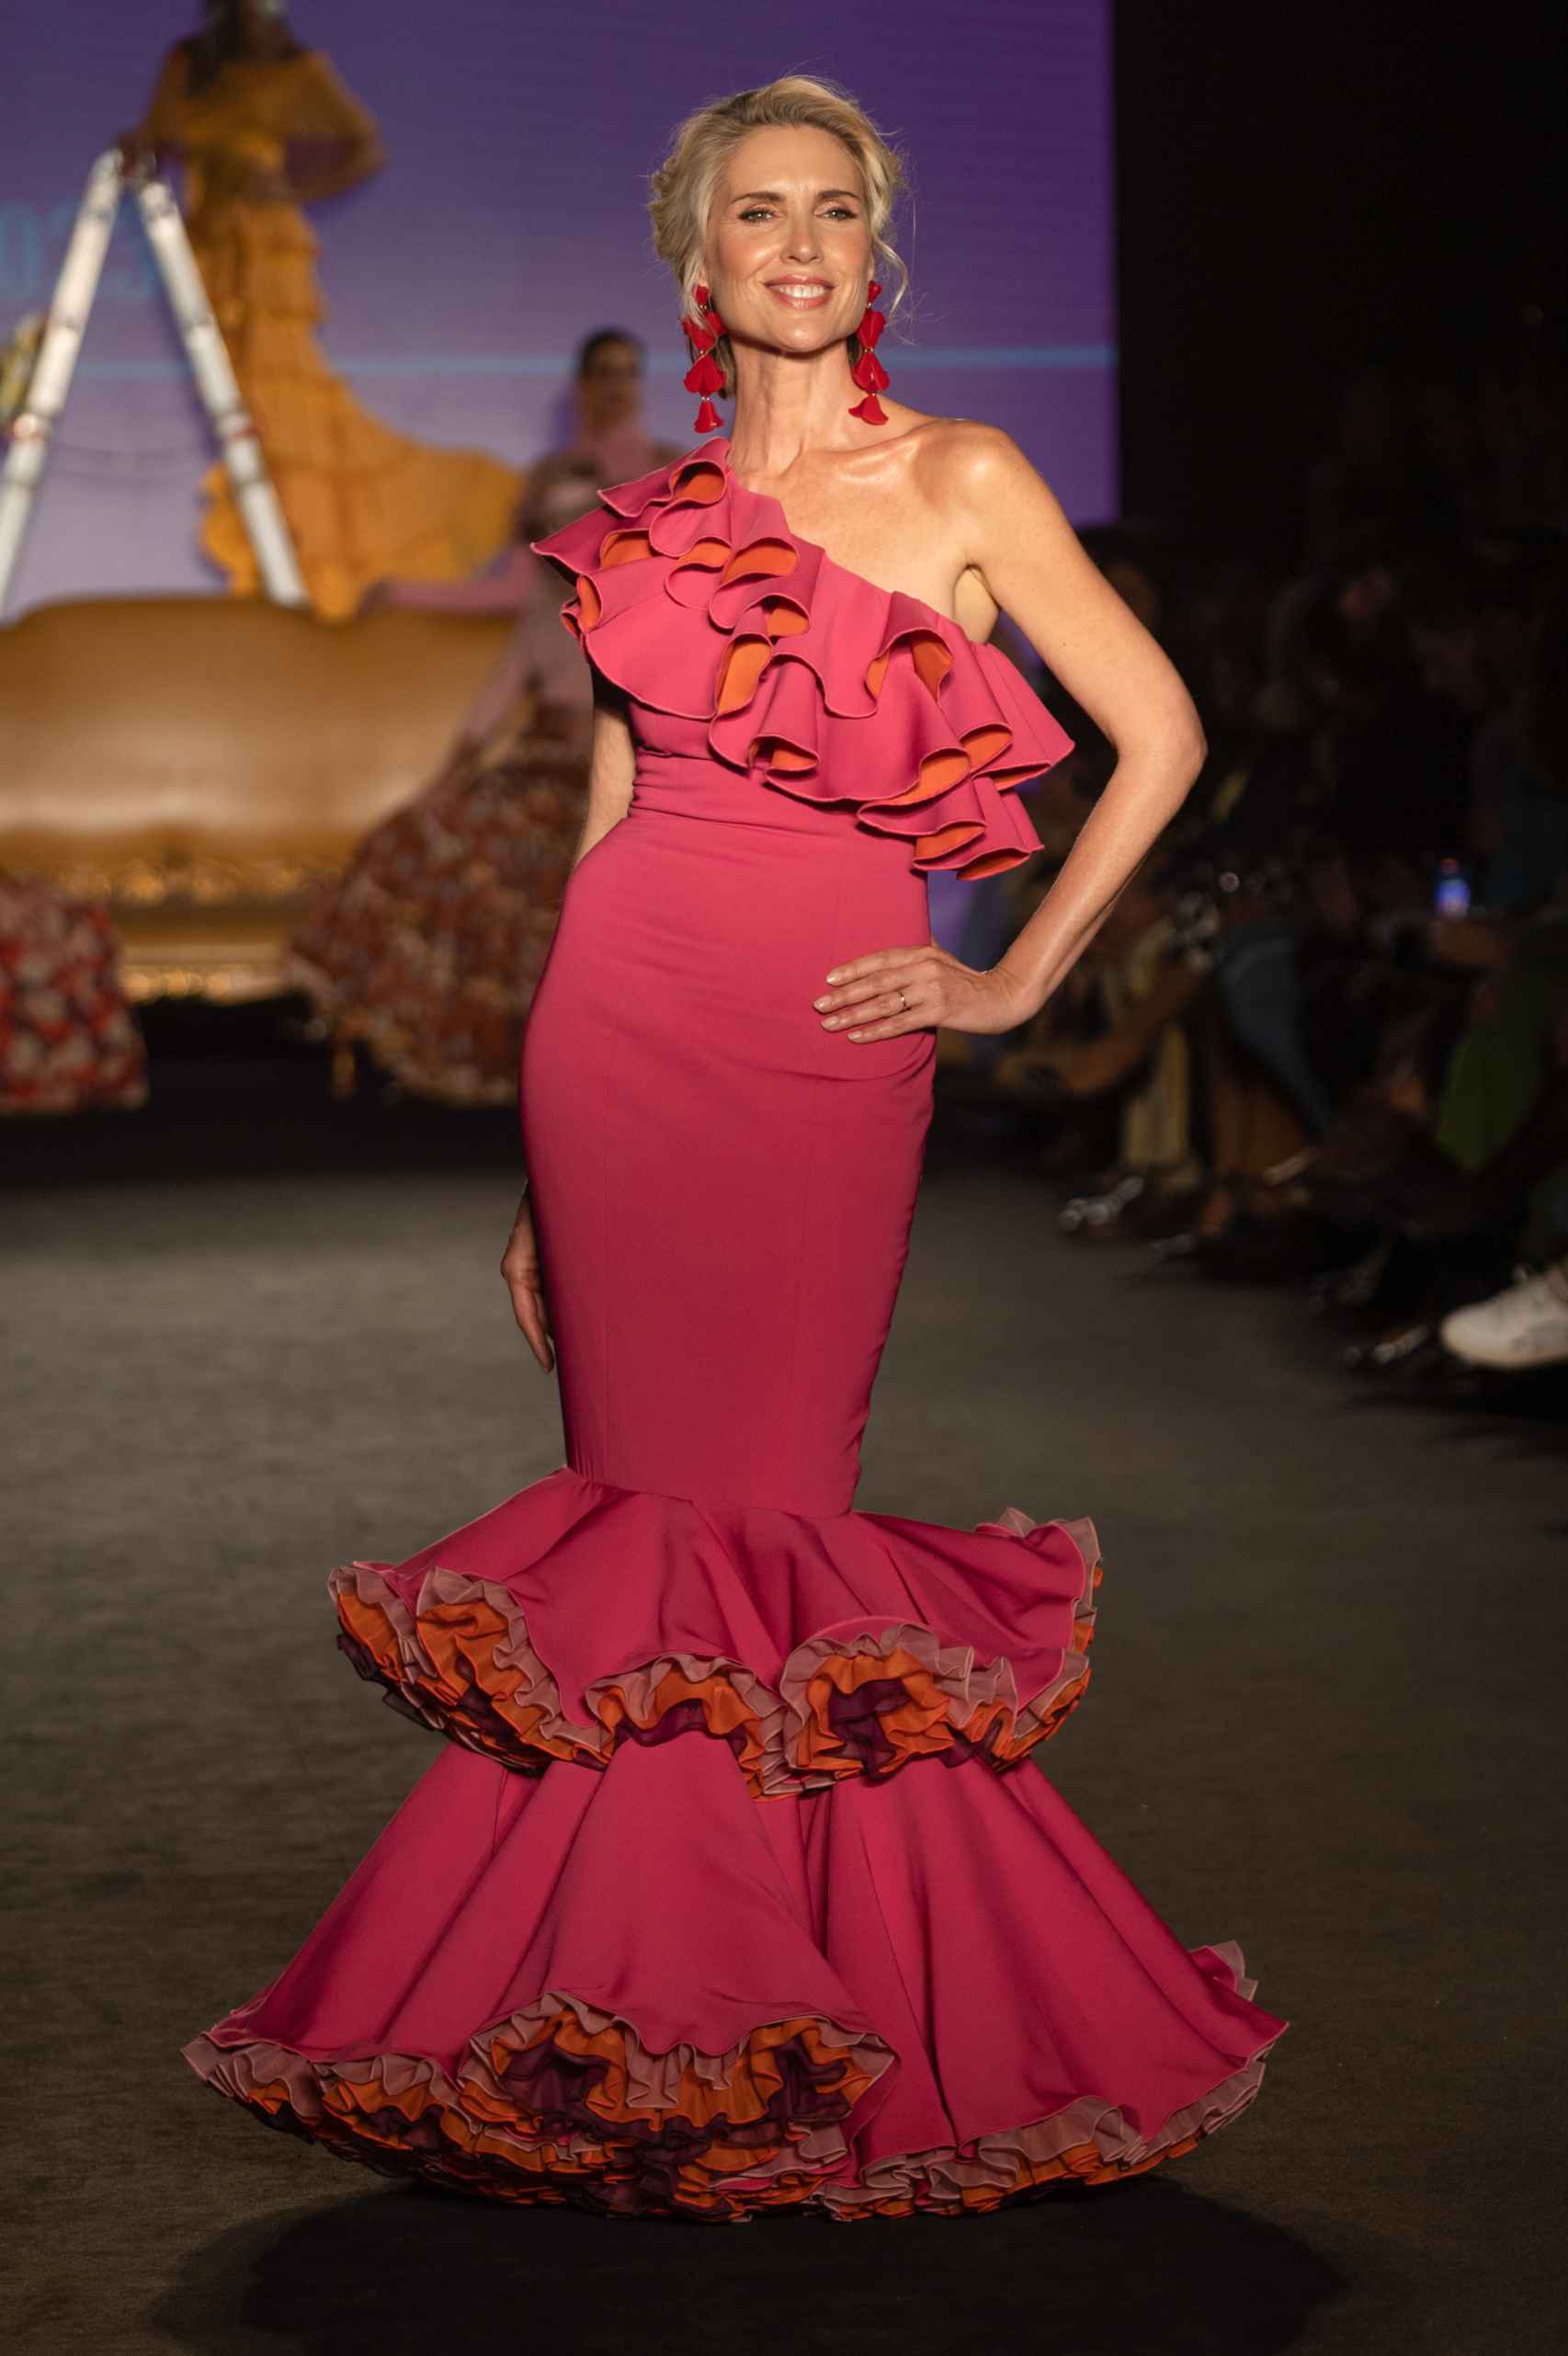 La modelo Judit Mascó desfilando con un vestido rosa y naranja de volantes